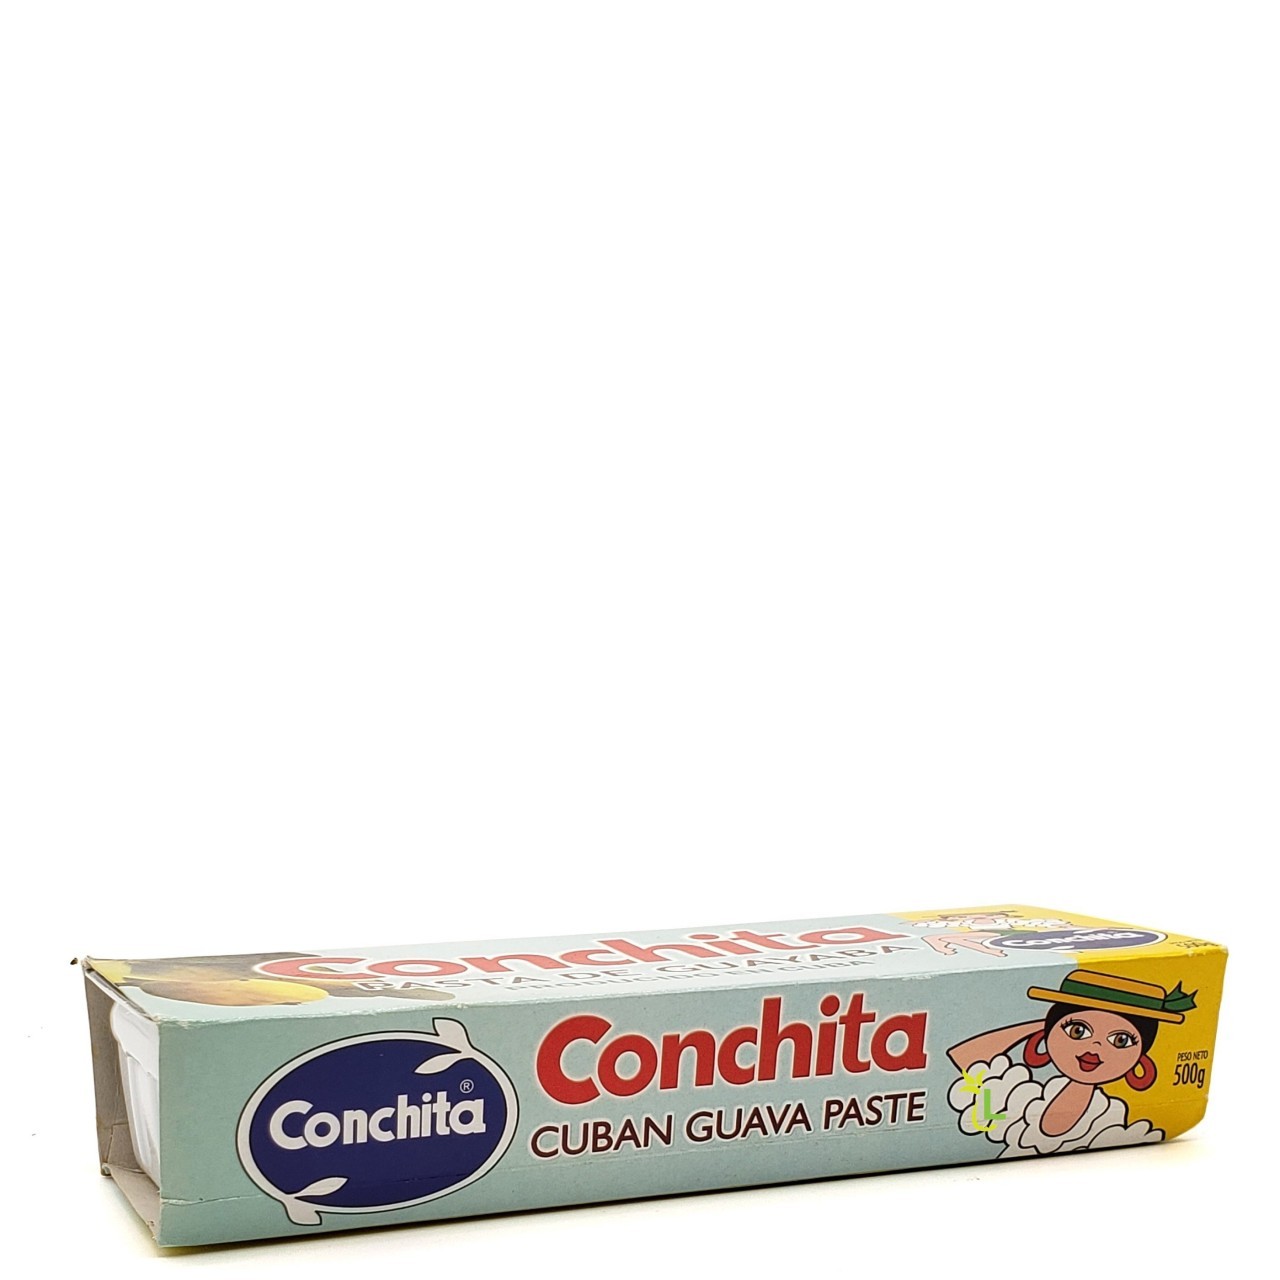 CONCHITA GUAVA PASTE 500g